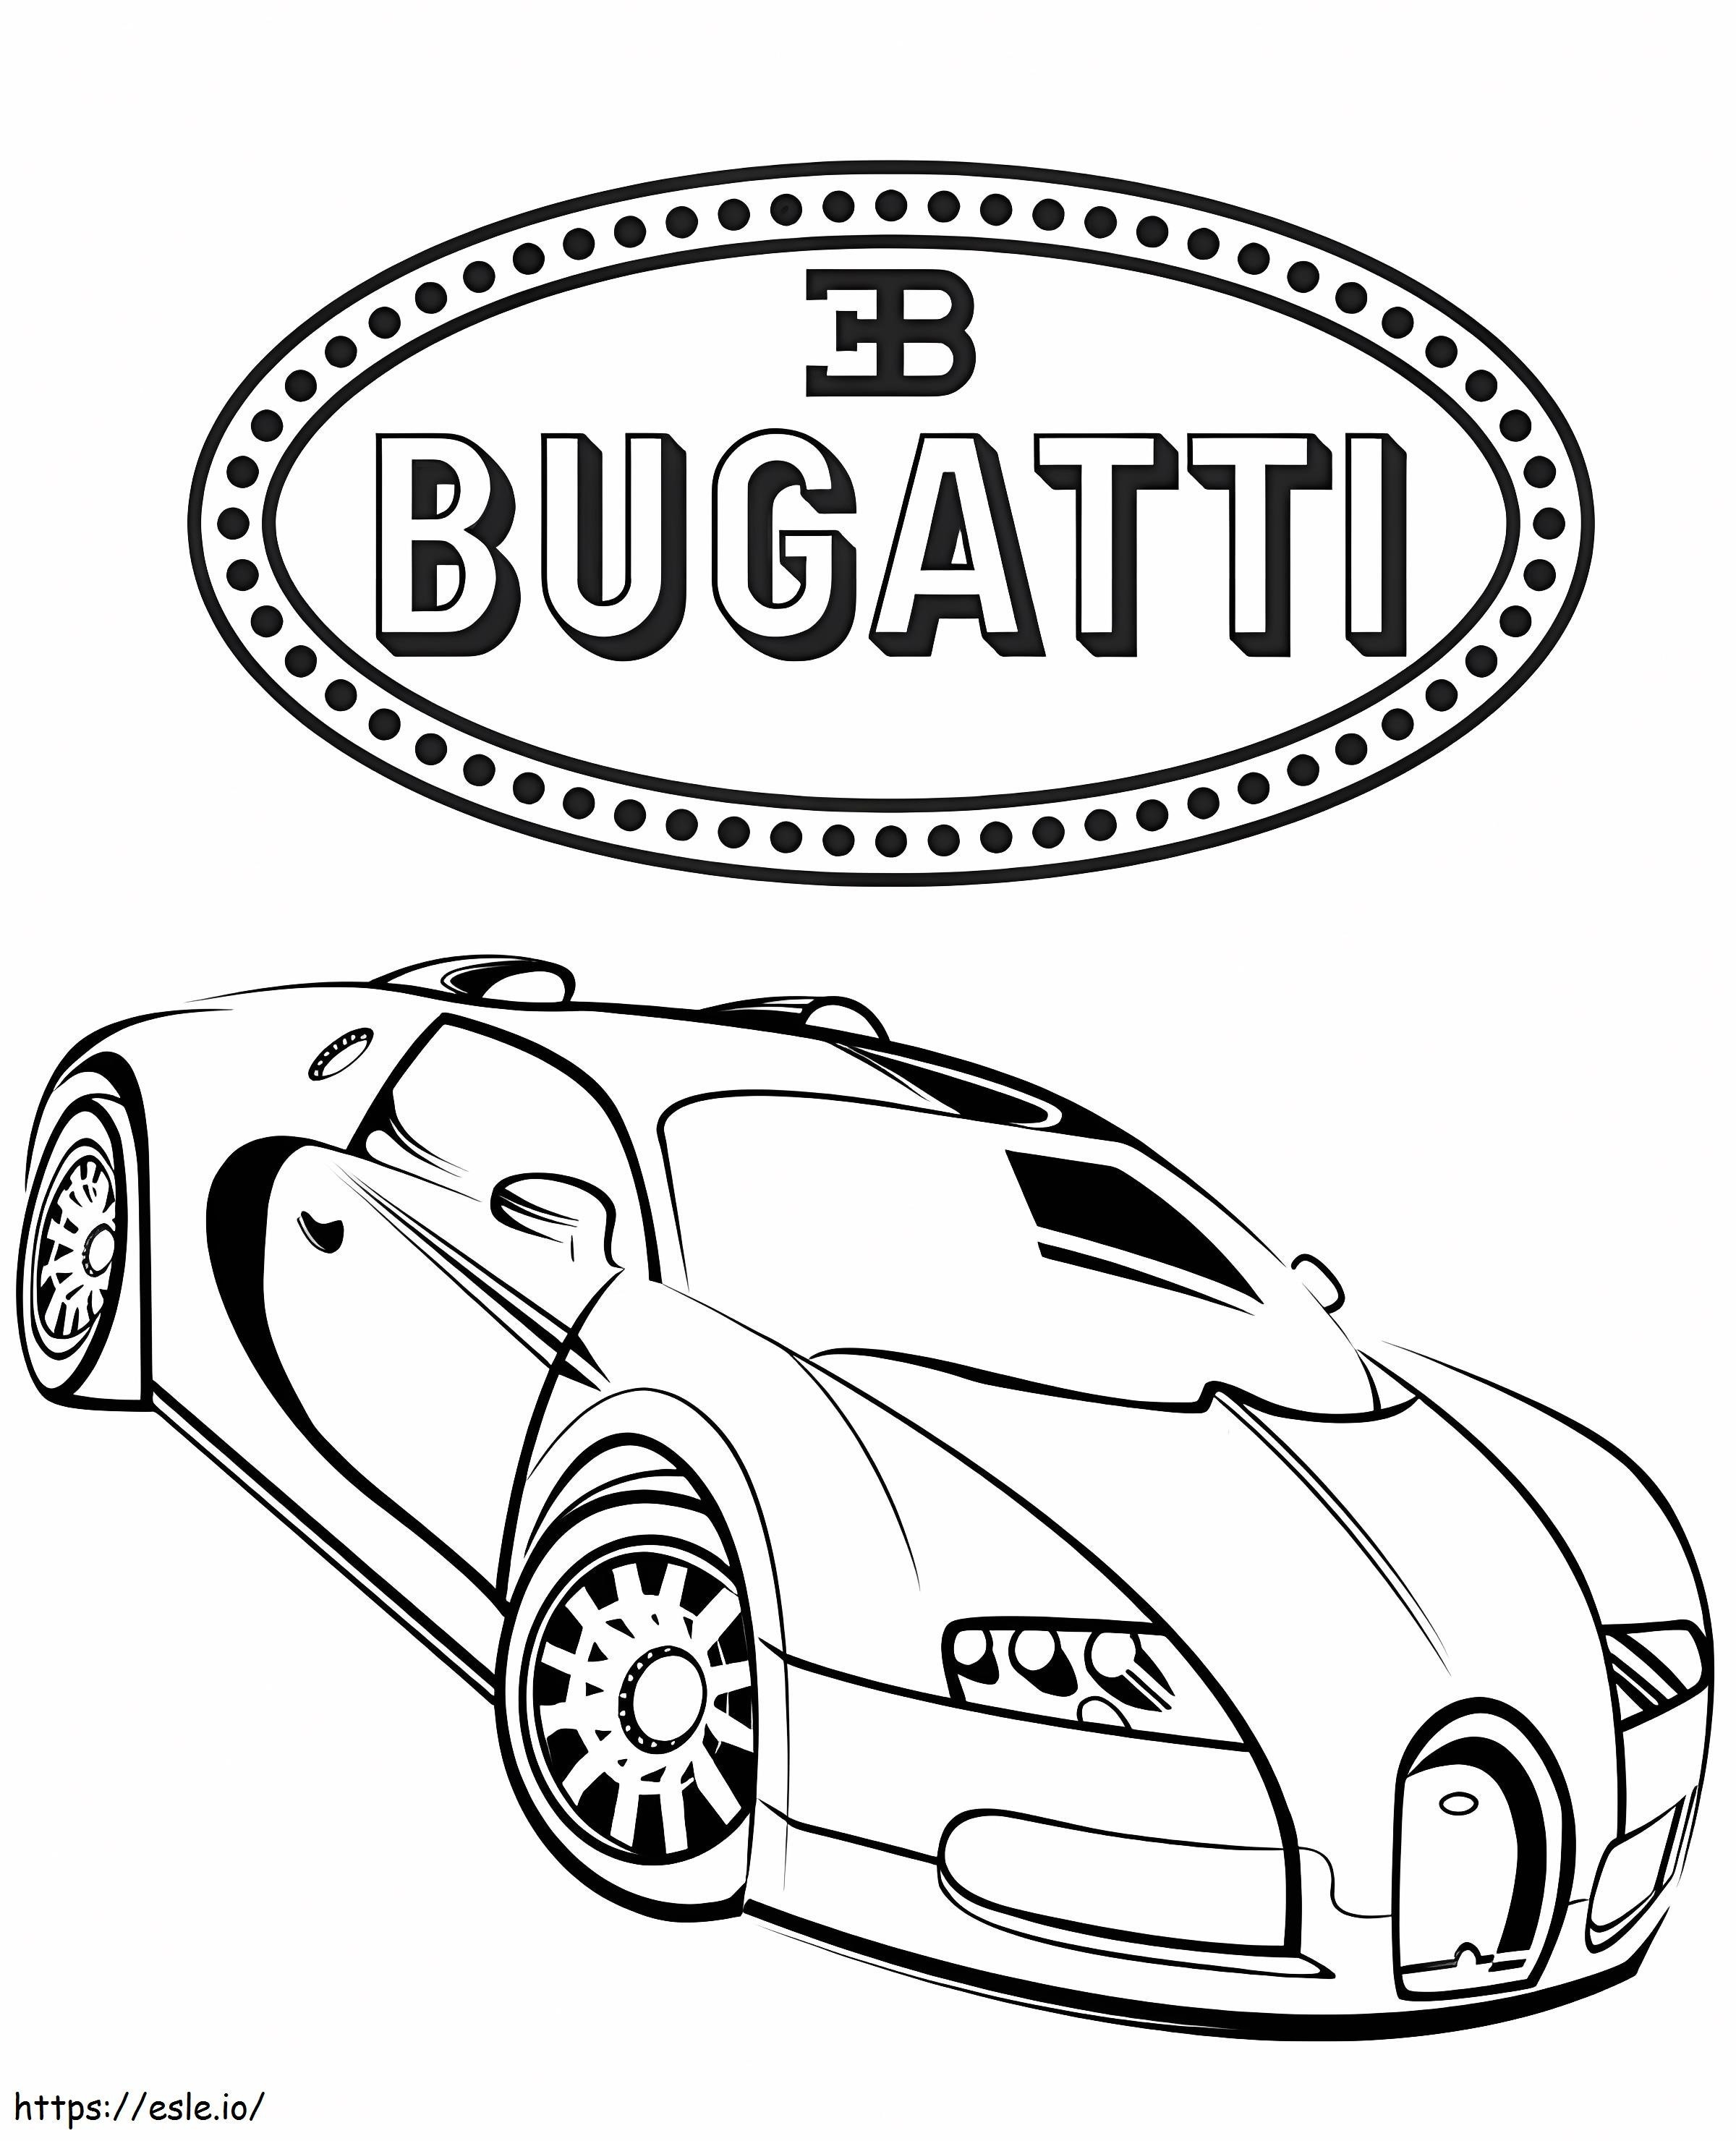 Macchina Bugatti 3 da colorare